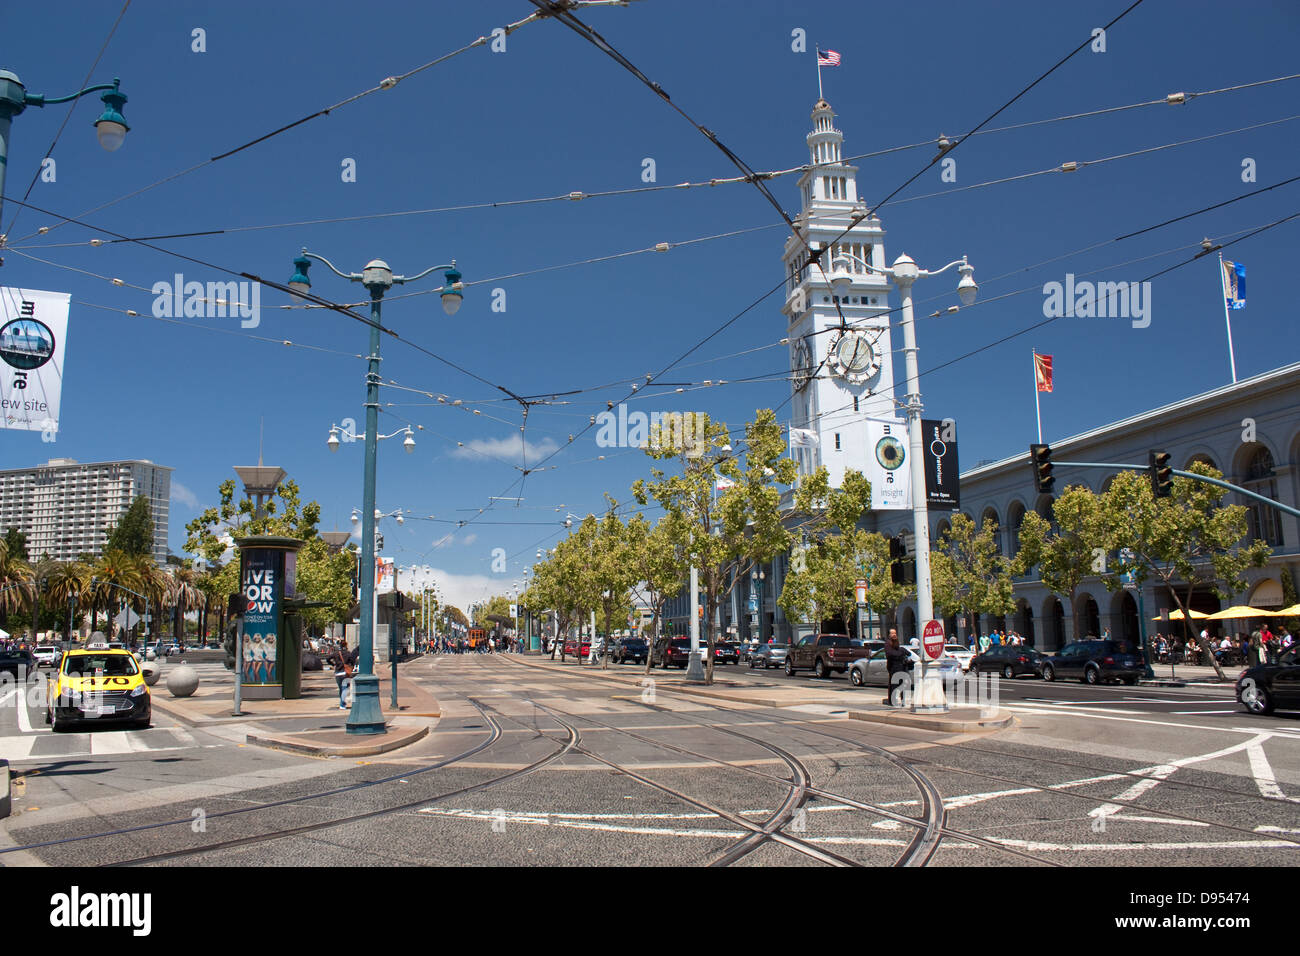 Les voies de tramway sur l'Embarcadero, San Francisco Banque D'Images